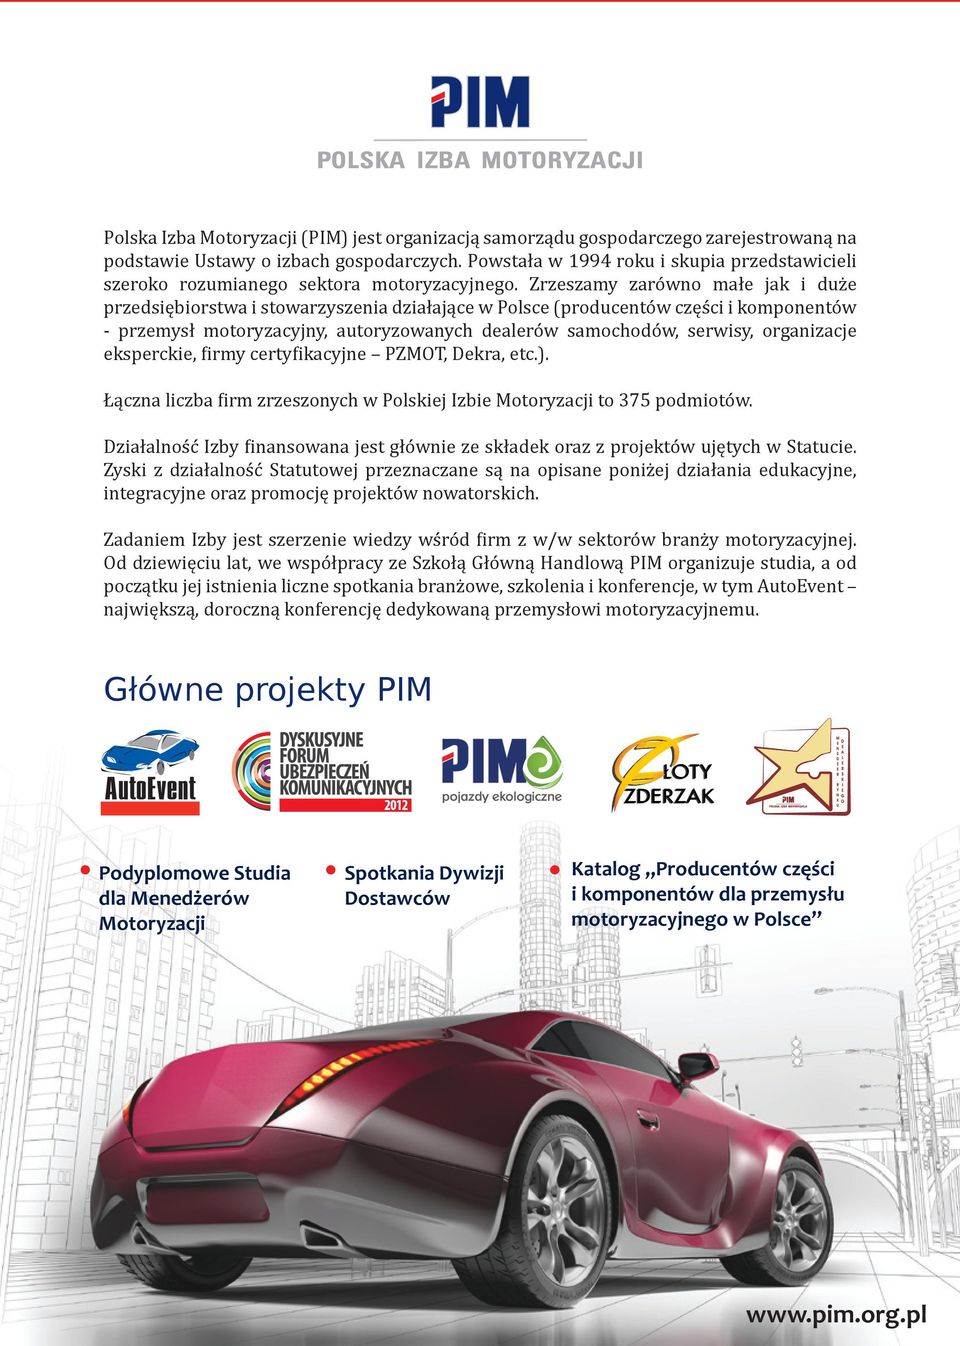 Zrzeszamy zarówno małe jak i duże przedsiębiorstwa i stowarzyszenia działające w Polsce (producentów części i komponentów - przemysł motoryzacyjny, autoryzowanych dealerów samochodów, serwisy,